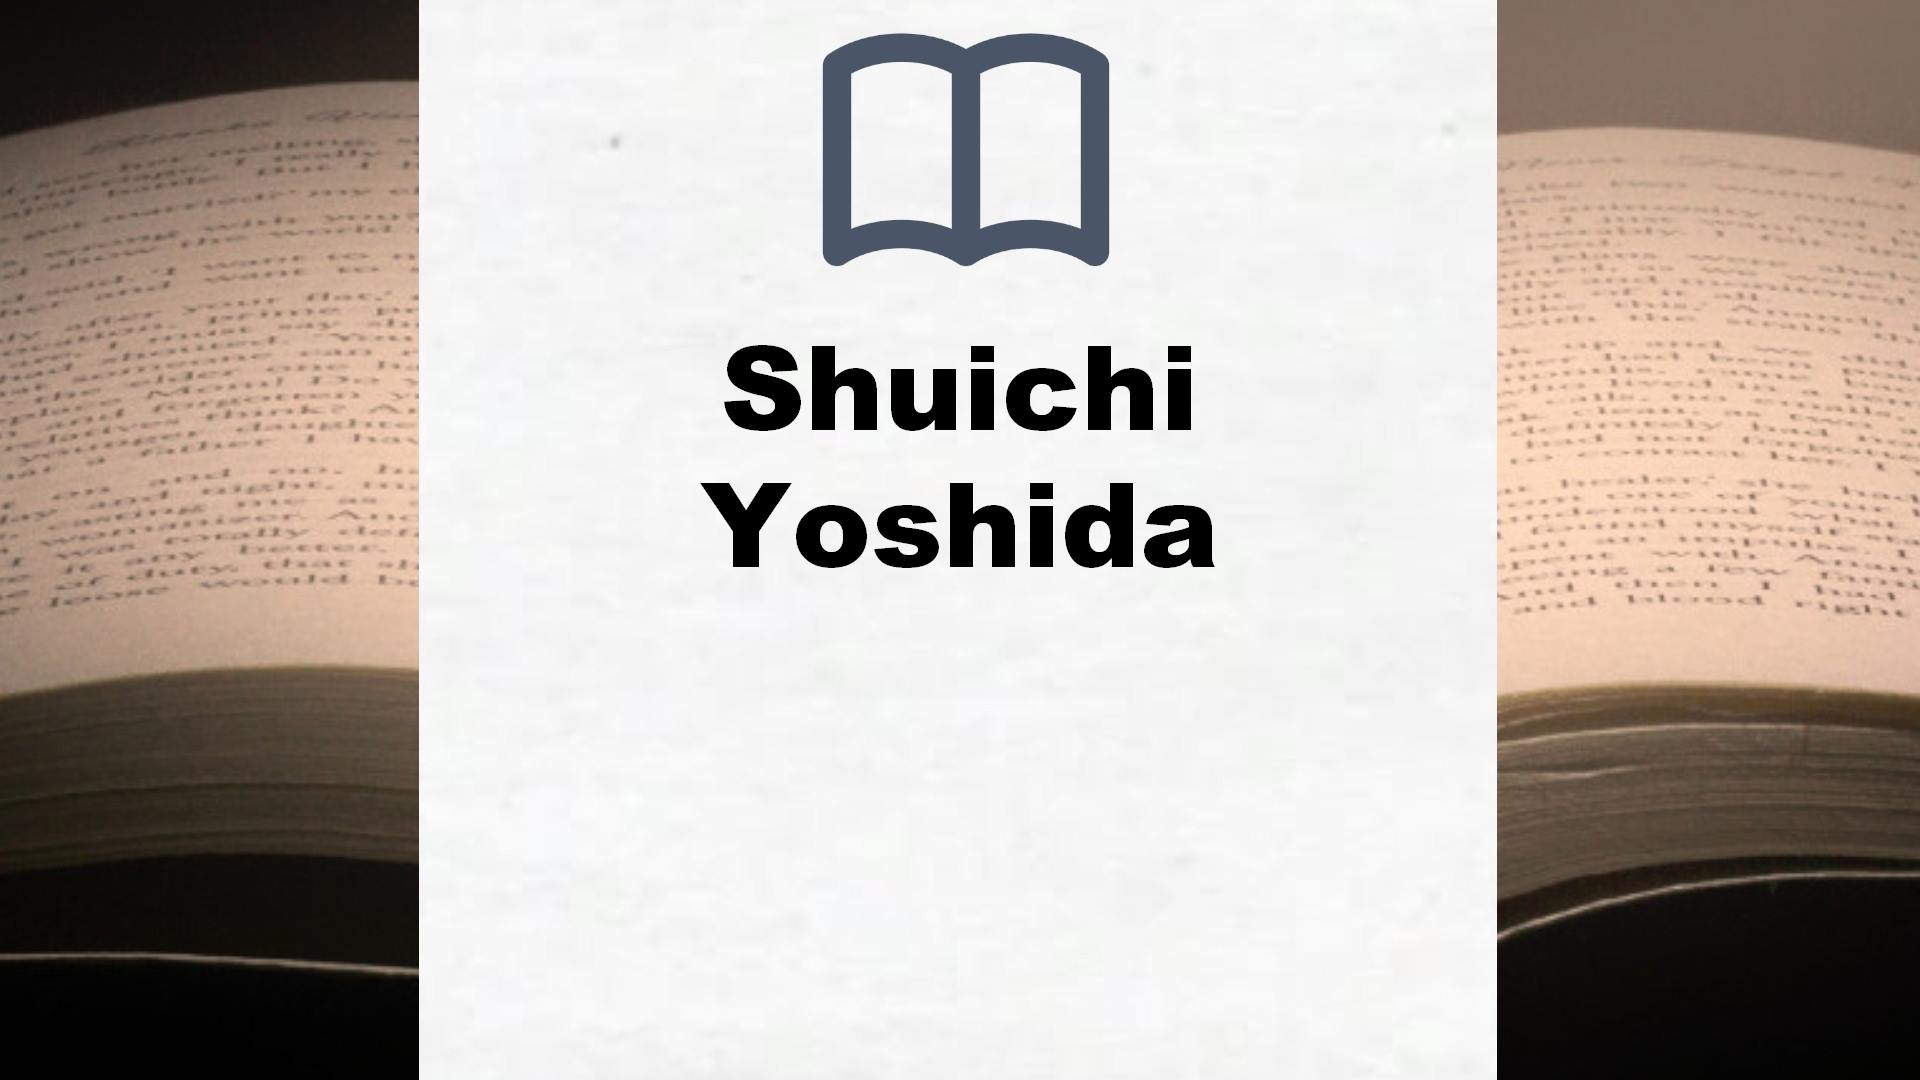 Libros Shuichi Yoshida